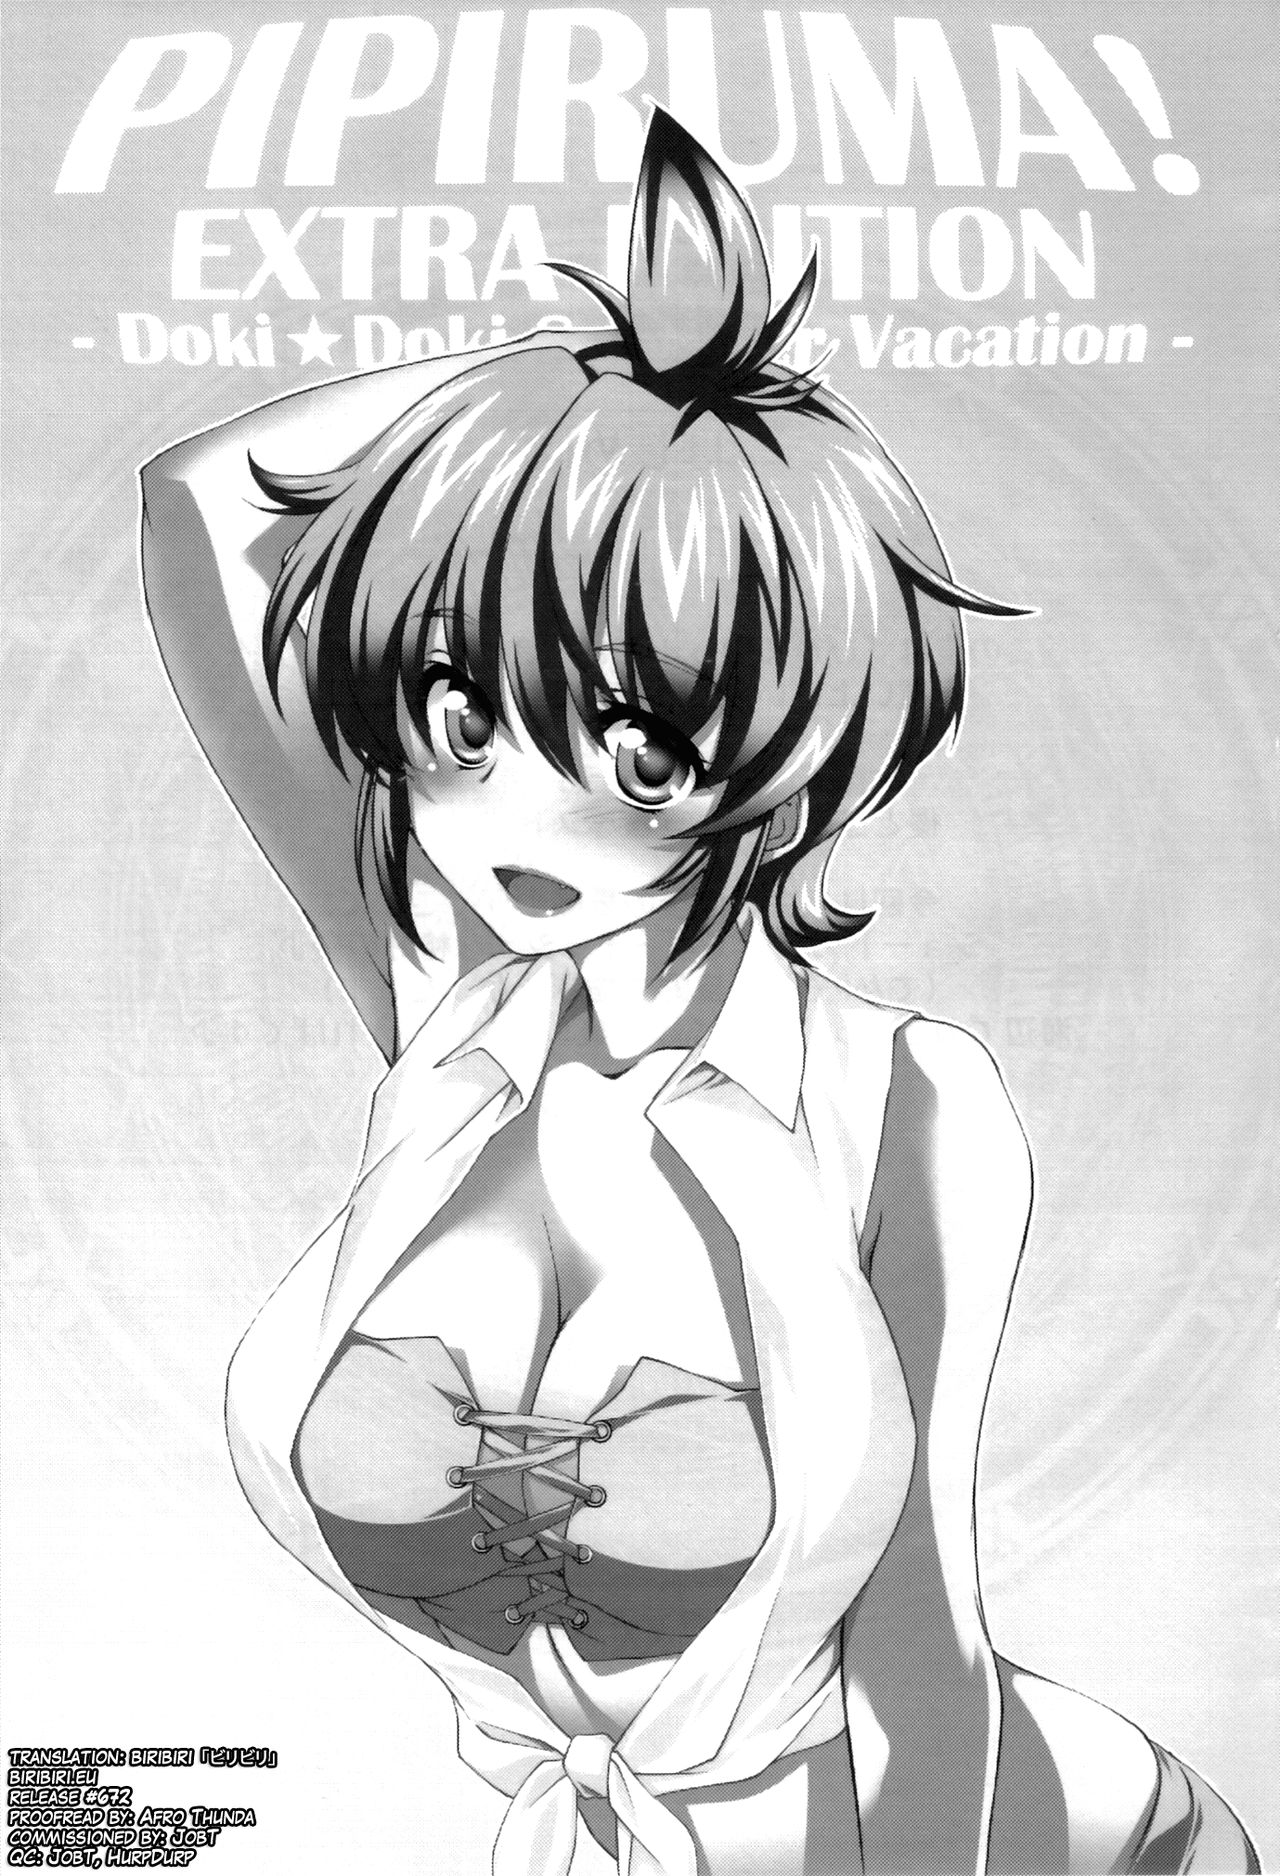 (C81) [Homura's R Comics (Yuuki Homura)] Pipiruma! Extra Edition -Doki★Doki Summer Vacation- [English] [biribiri] (C81) [Homura's R Comics (結城焔)] ぴぴる魔っ!どきどきばけーしょん [英訳]